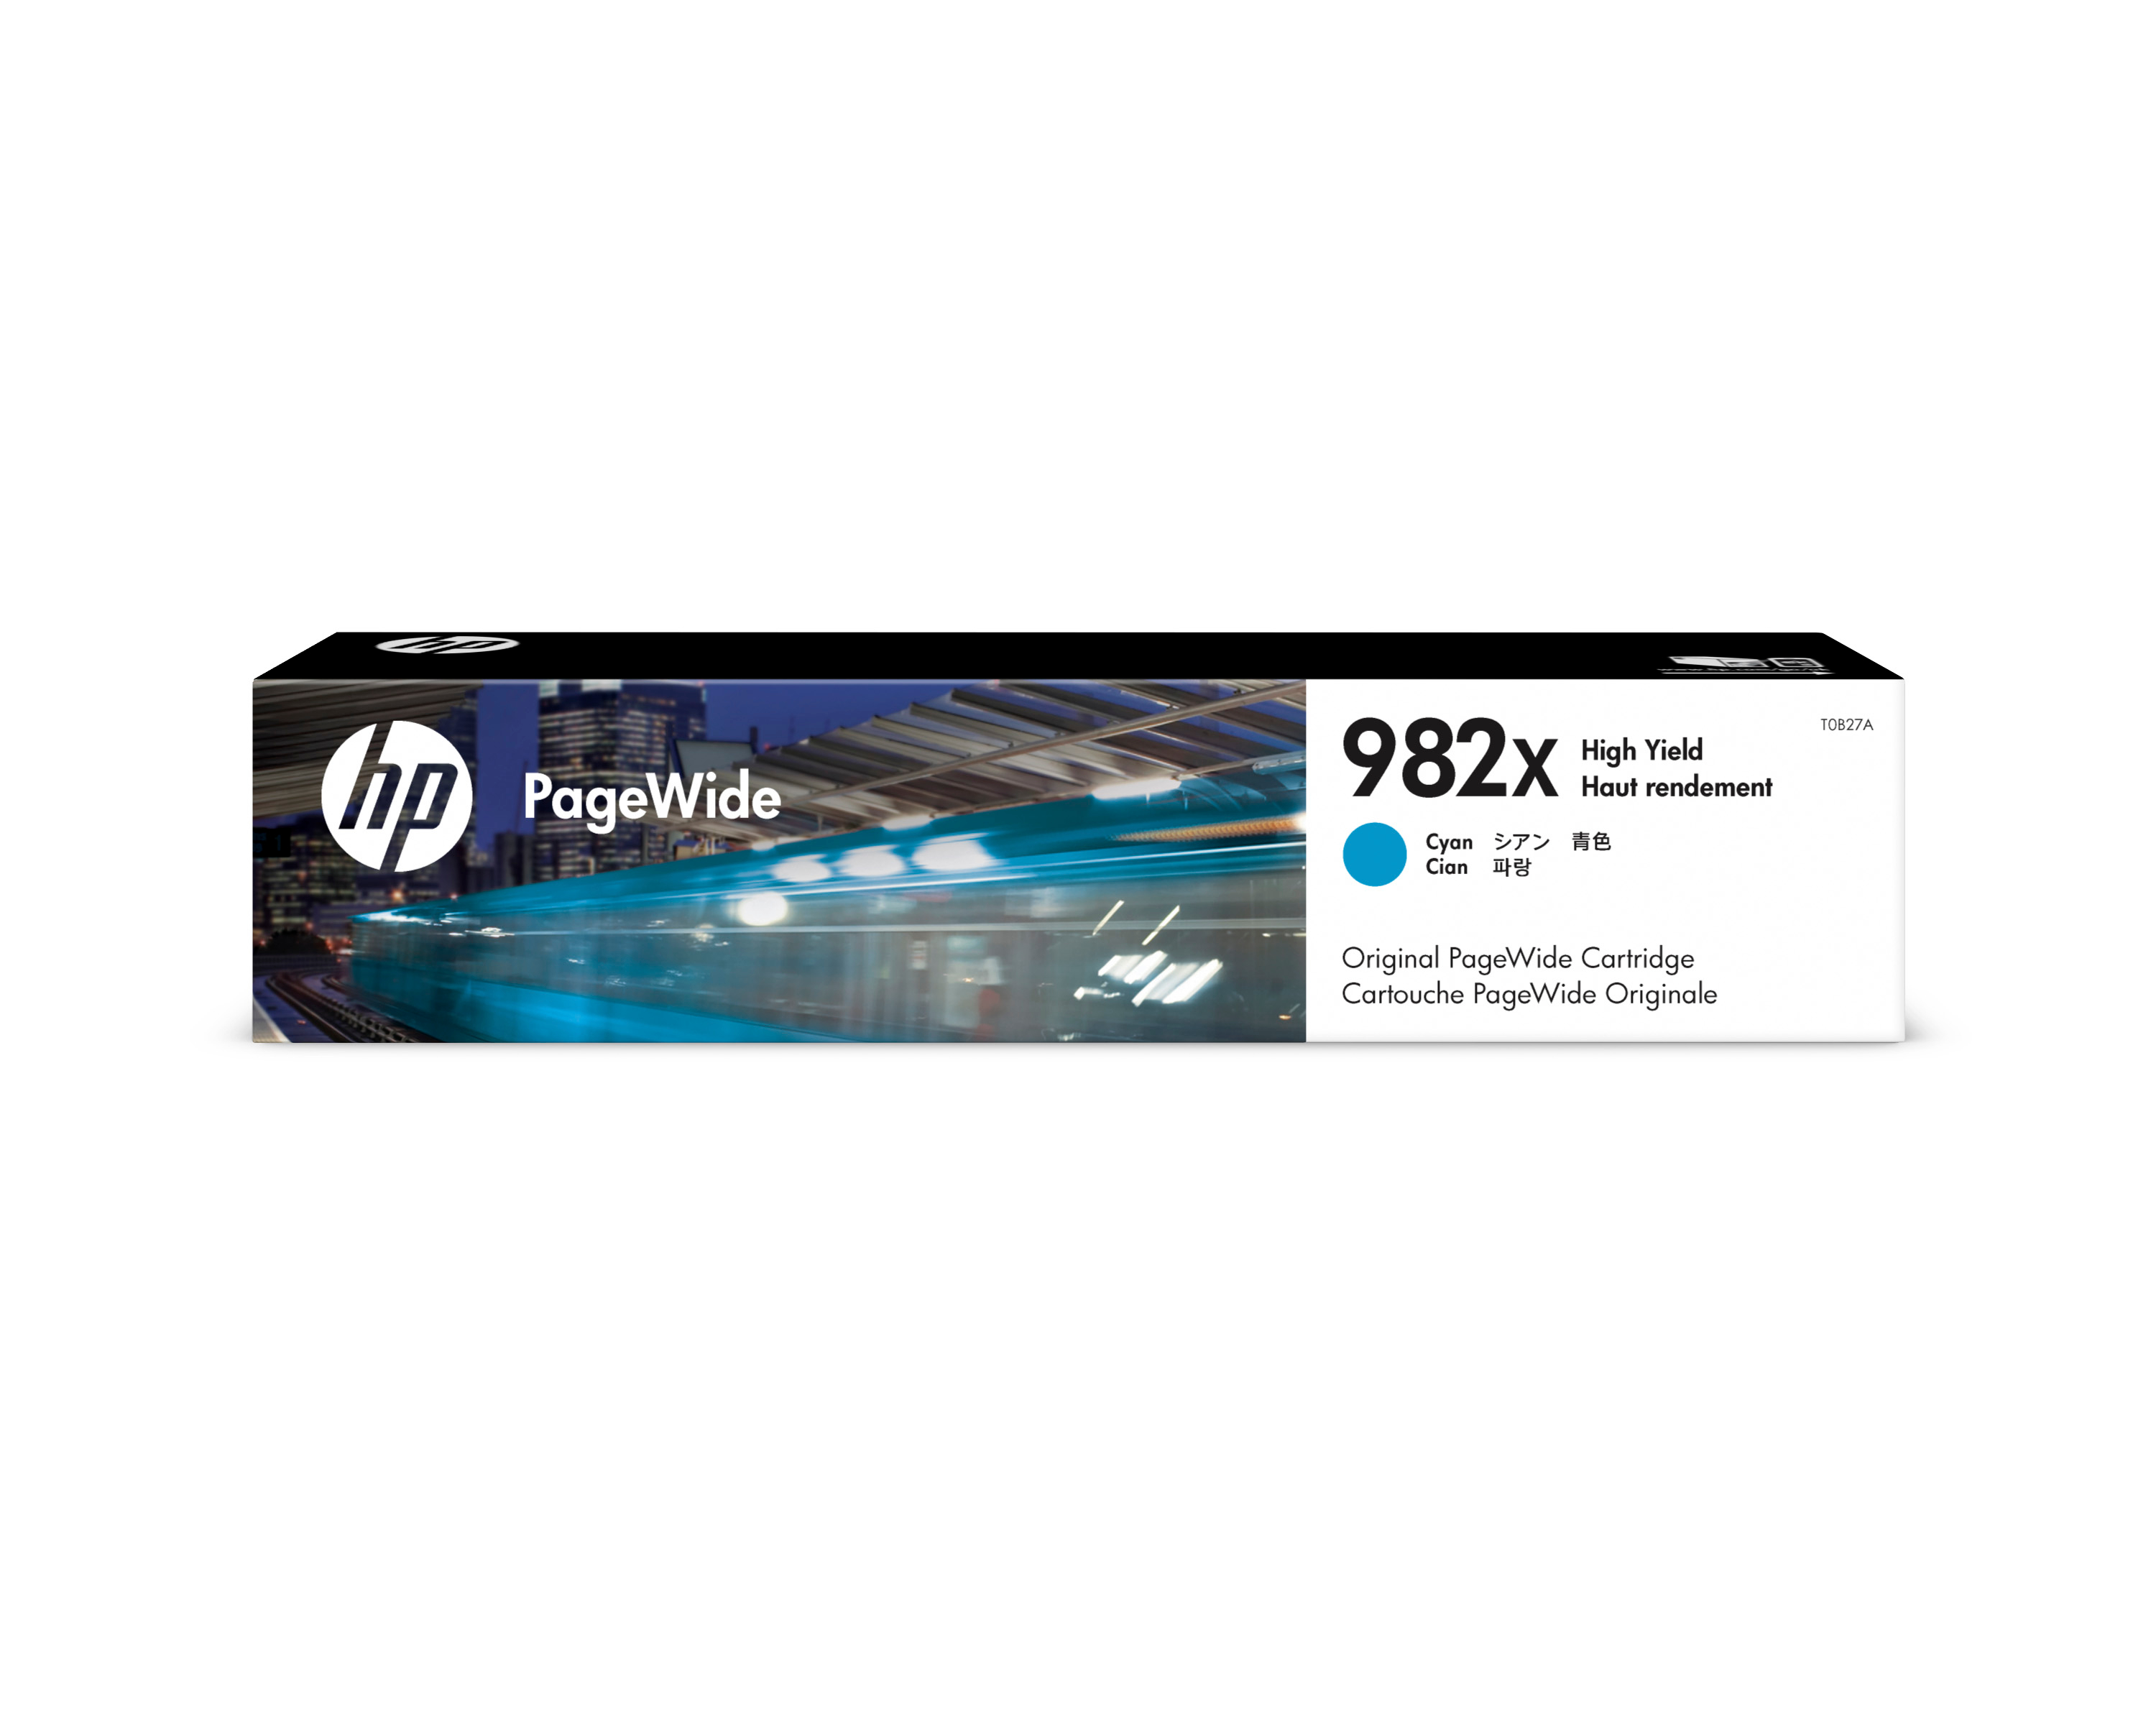 HP PW-Cartridge 982X cyan T0B27A PageWide Ent.765 16'000 p.